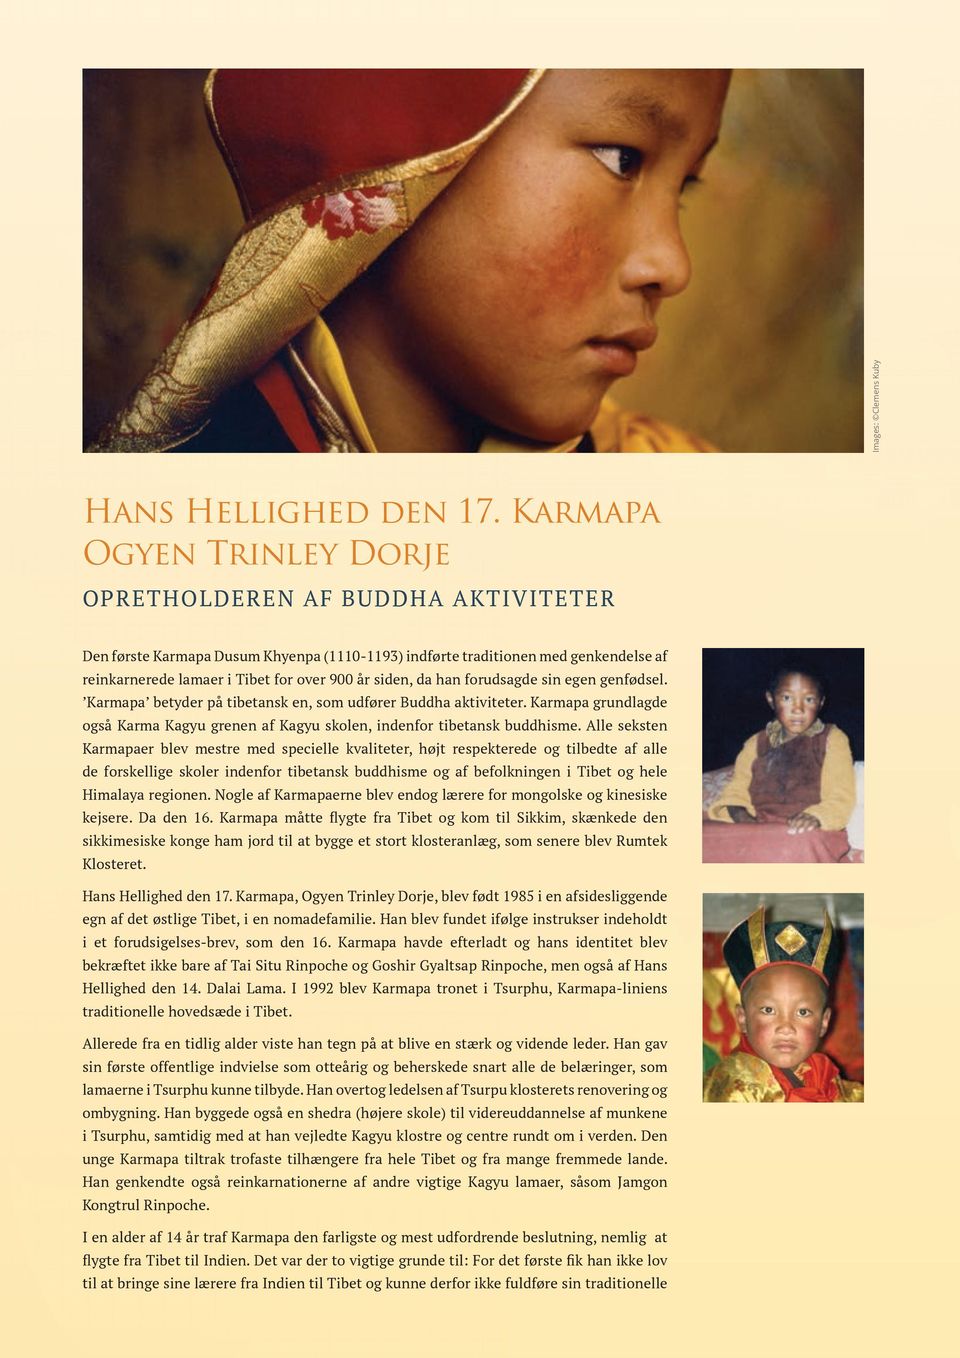 siden, da han forudsagde sin egen genfødsel. Karmapa betyder på tibetansk en, som udfører Buddha aktiviteter. Karmapa grundlagde også Karma Kagyu grenen af Kagyu skolen, indenfor tibetansk buddhisme.